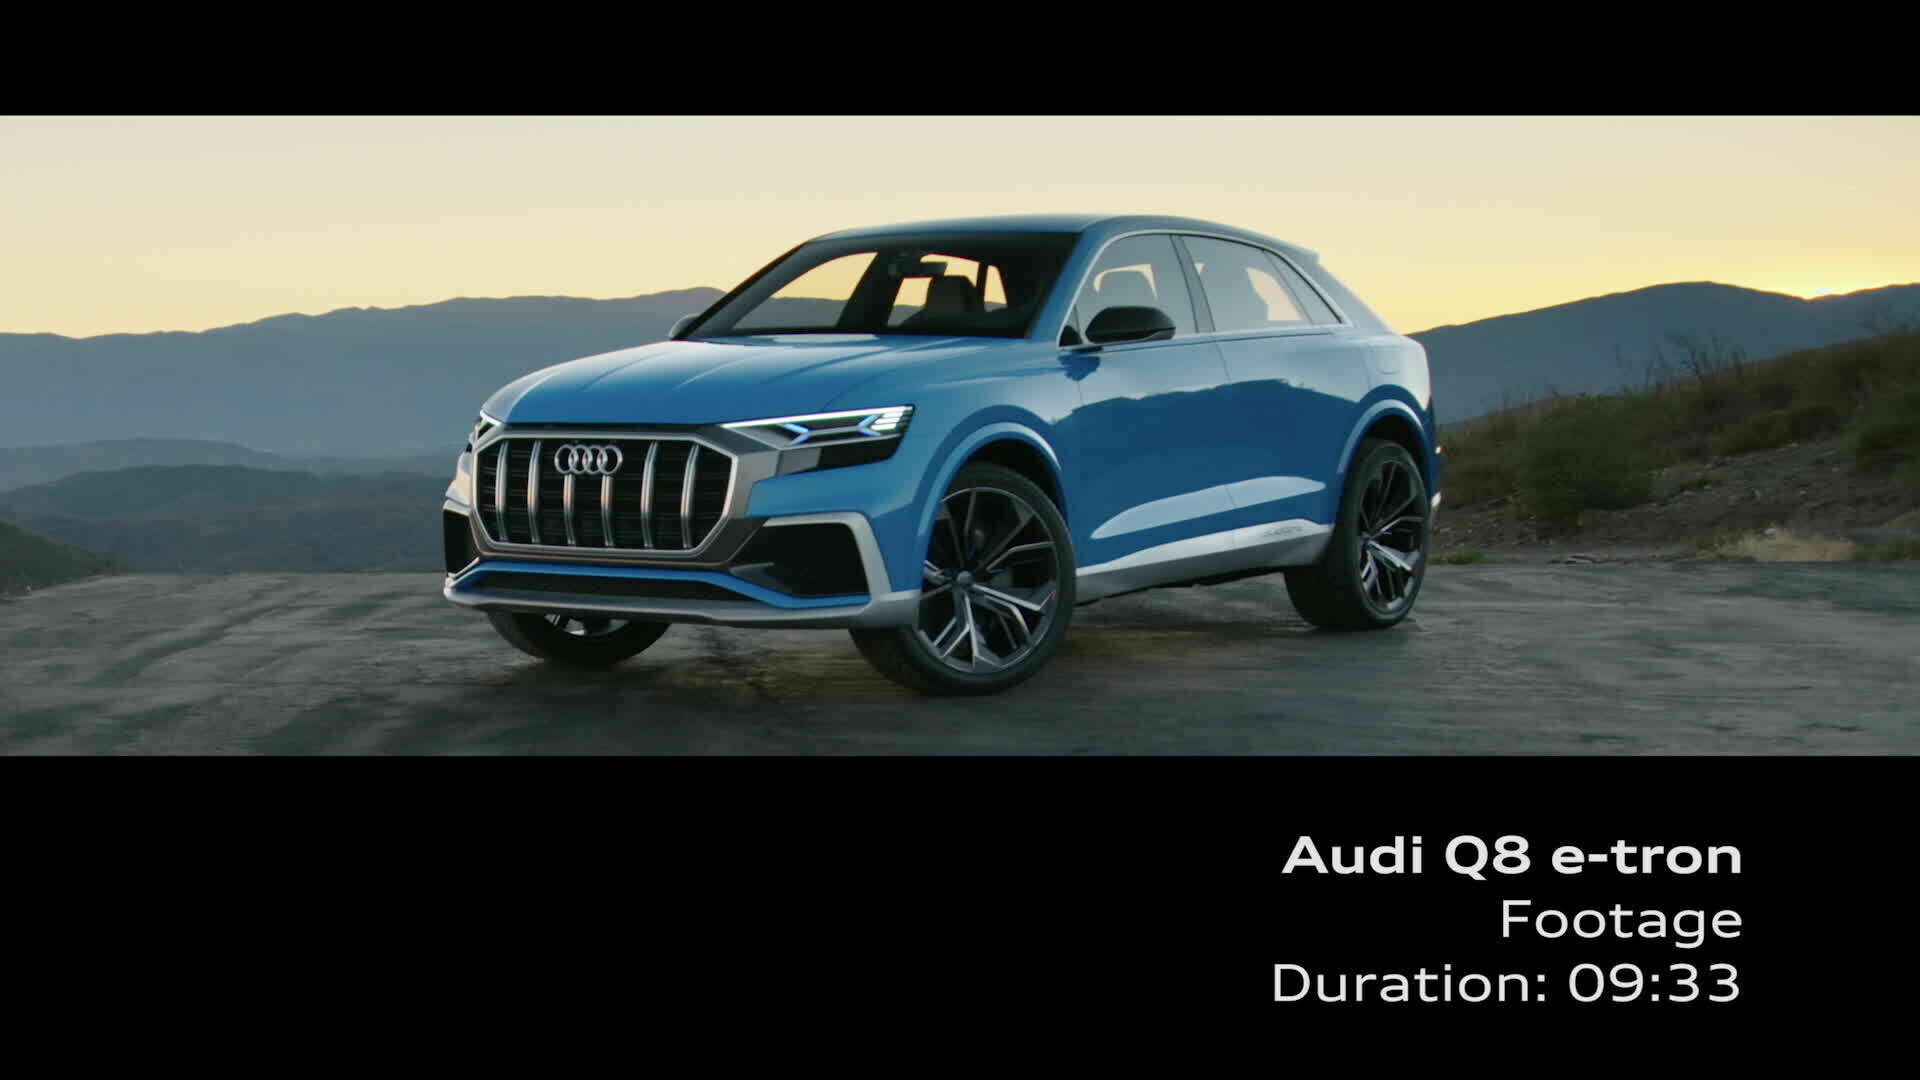 Audi Q8 concept - Footage